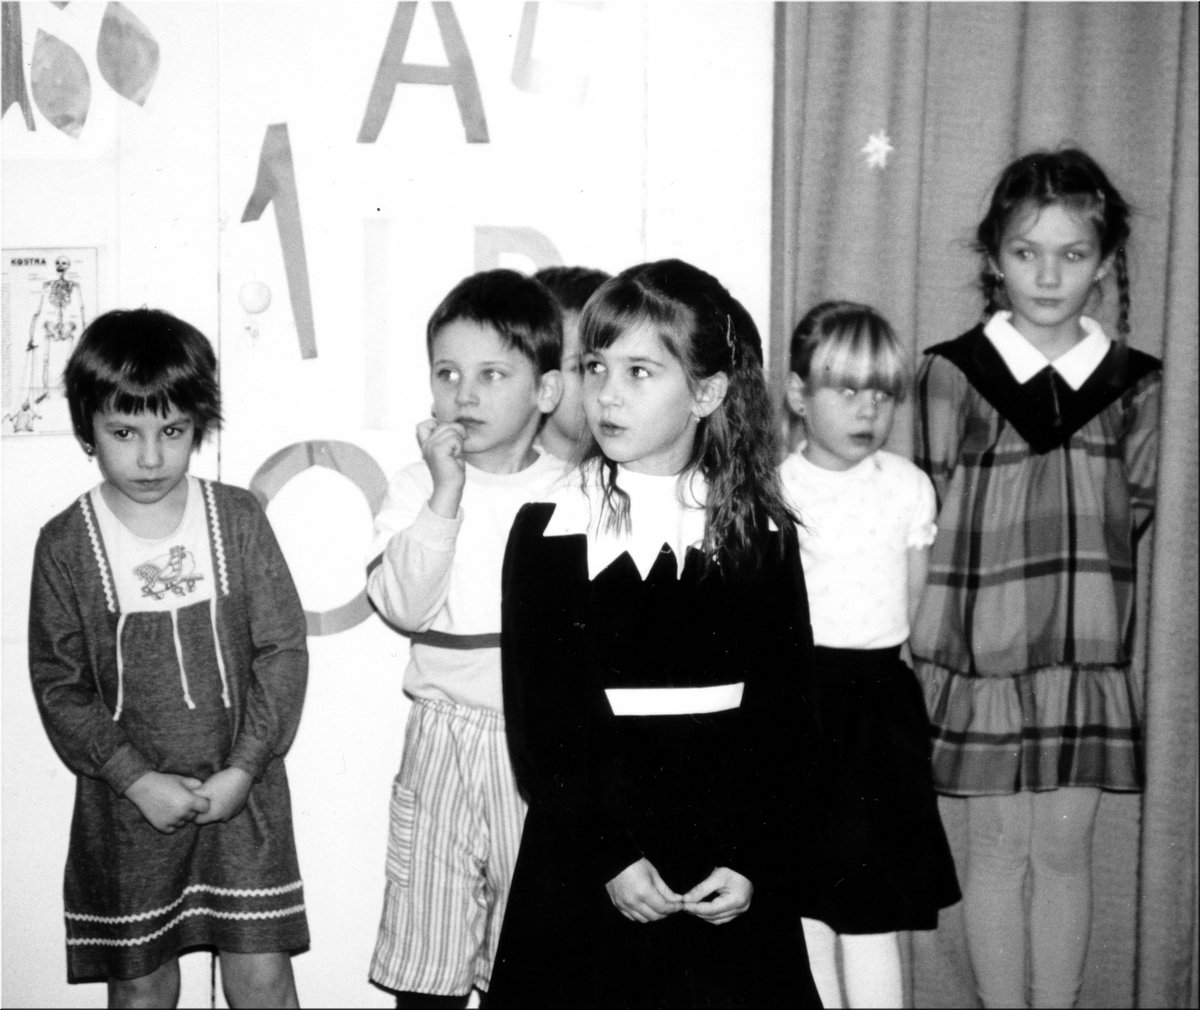 1992-Tomas-na-skolni-besidce-2.jpg